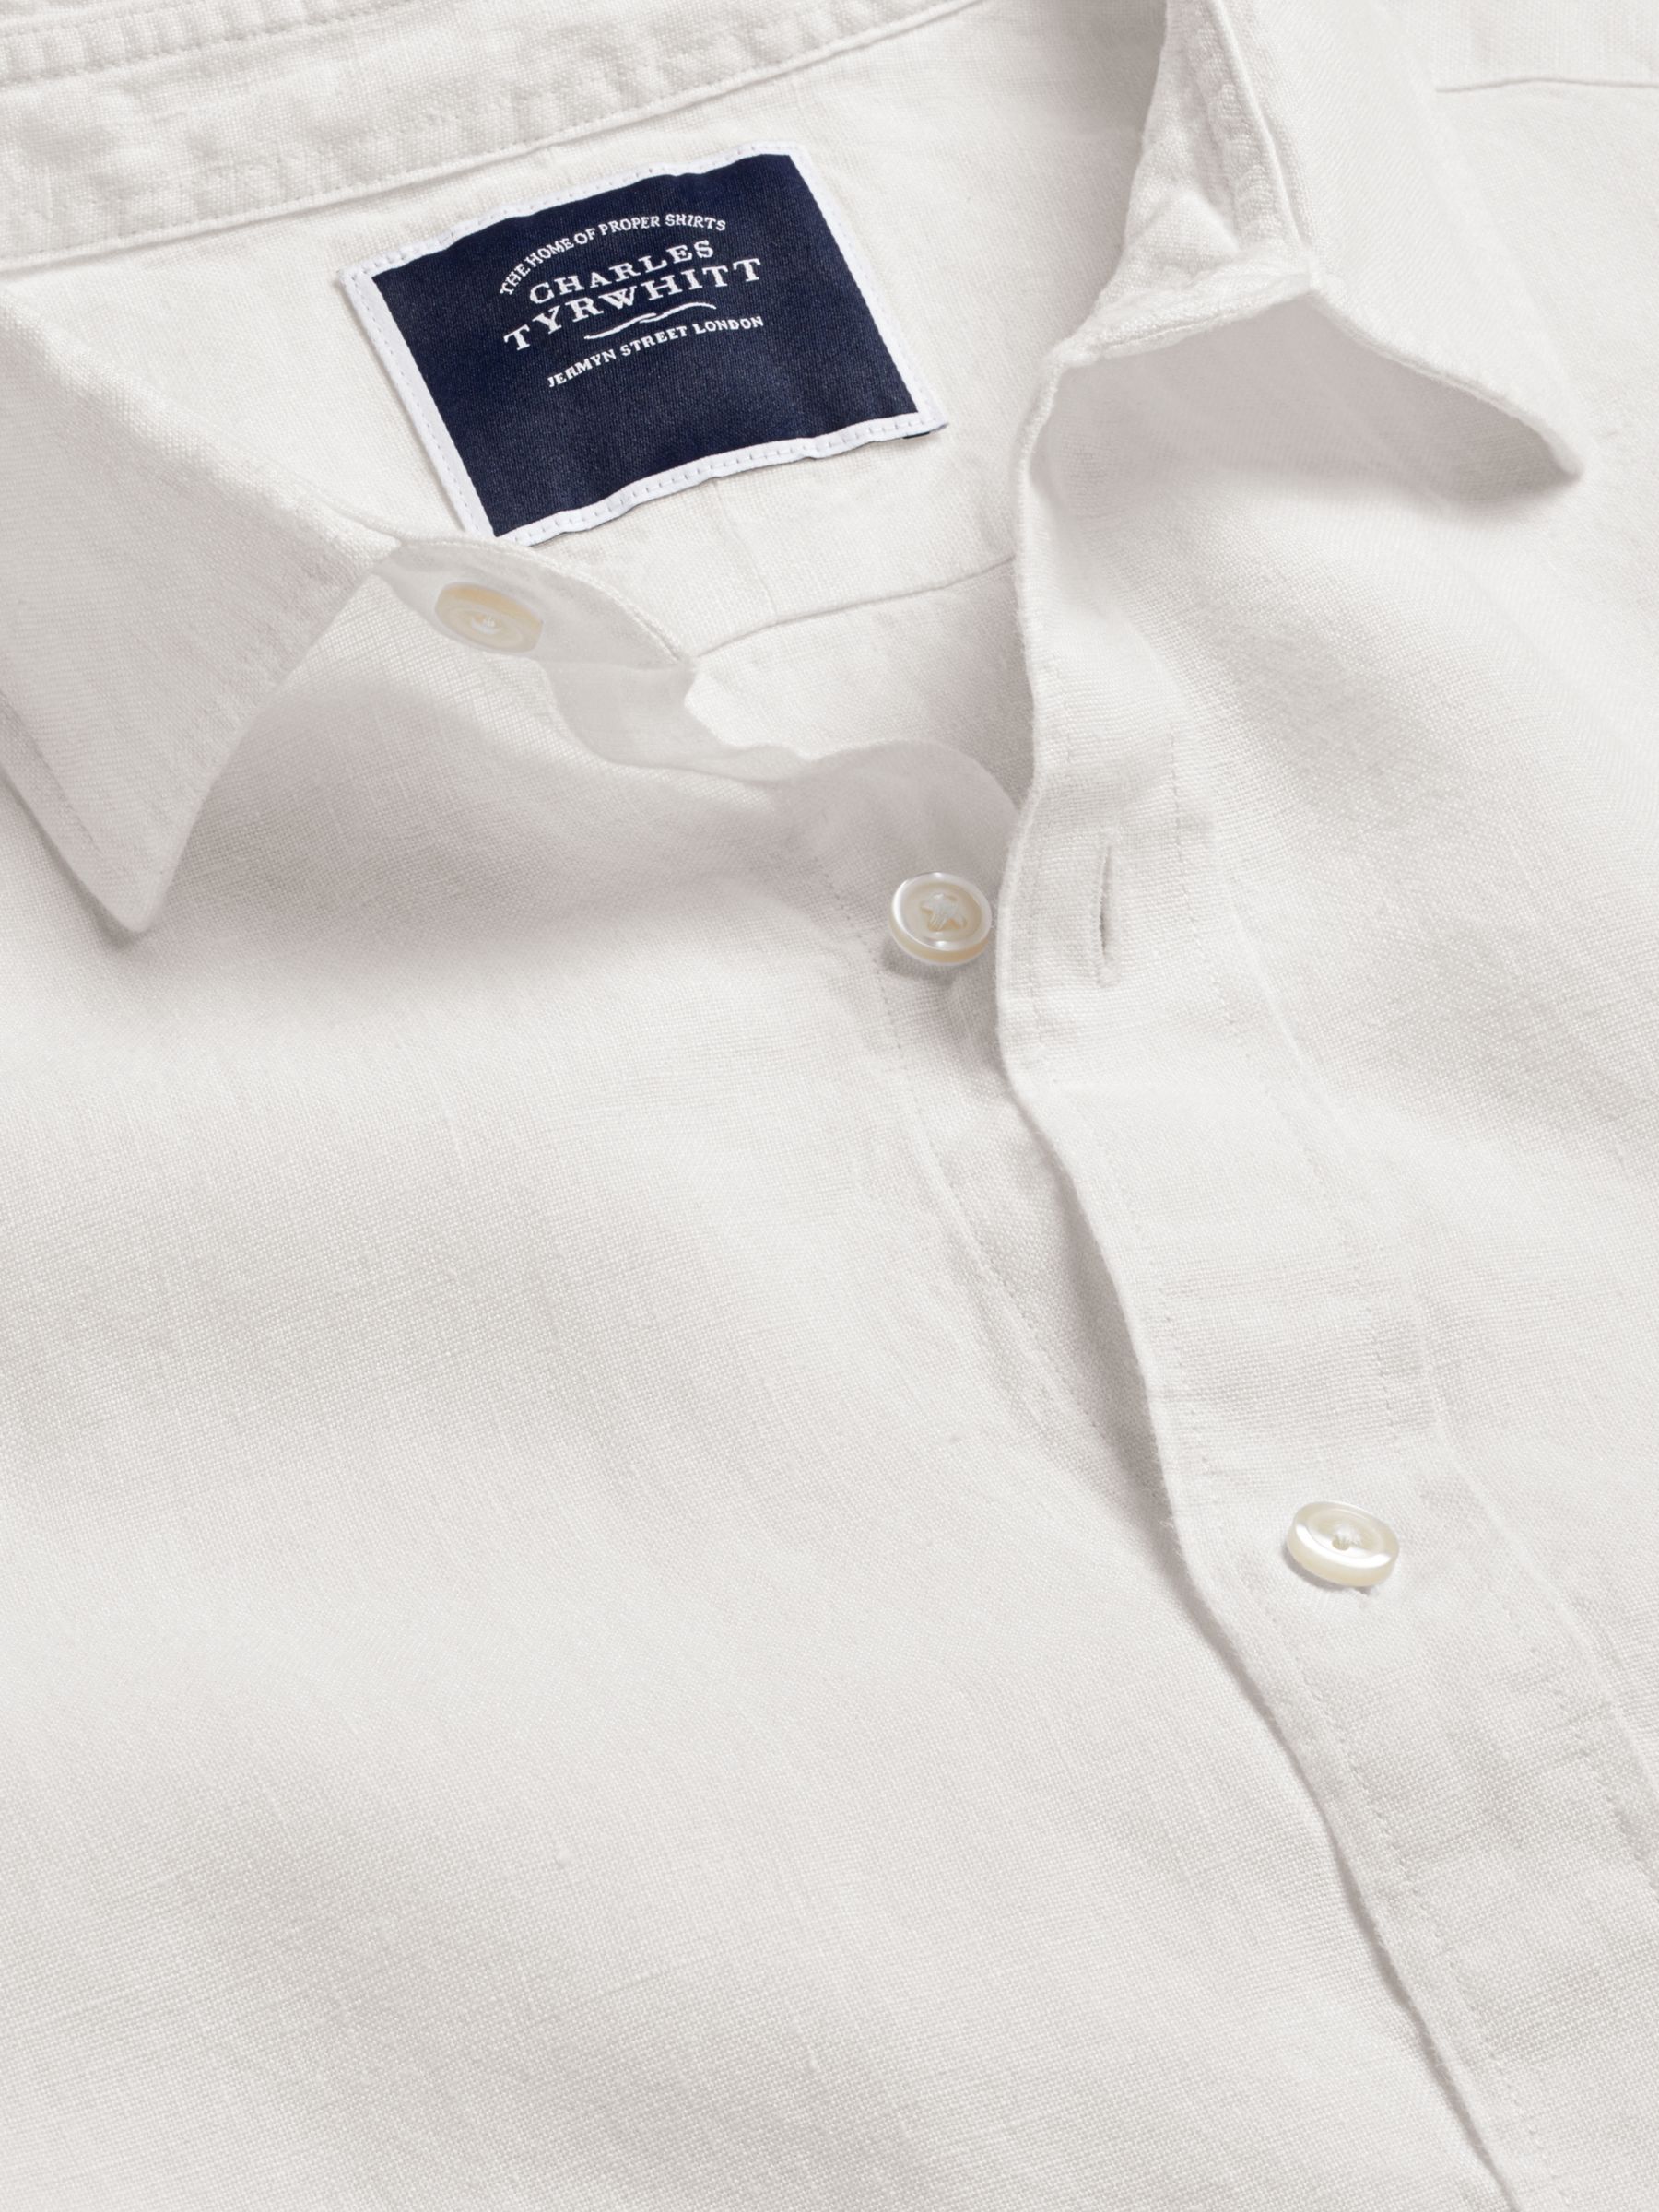 Charles Tyrwhitt Linen Slim Fit Shirt, White, S